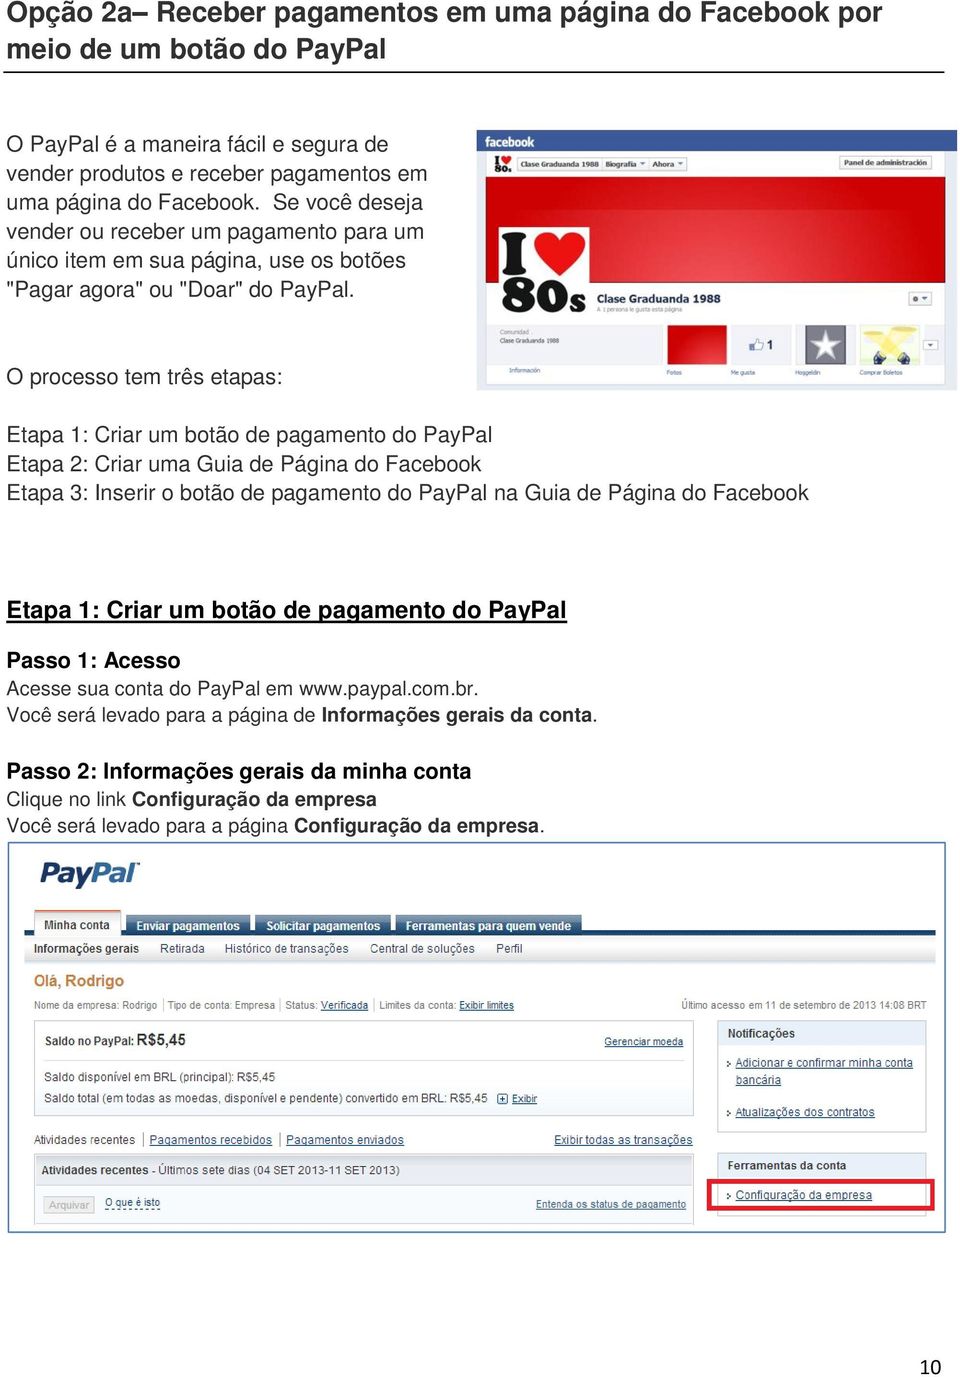 O processo tem três etapas: Etapa 1: Criar um botão de pagamento do PayPal Etapa 2: Criar uma Guia de Página do Facebook Etapa 3: Inserir o botão de pagamento do PayPal na Guia de Página do Facebook